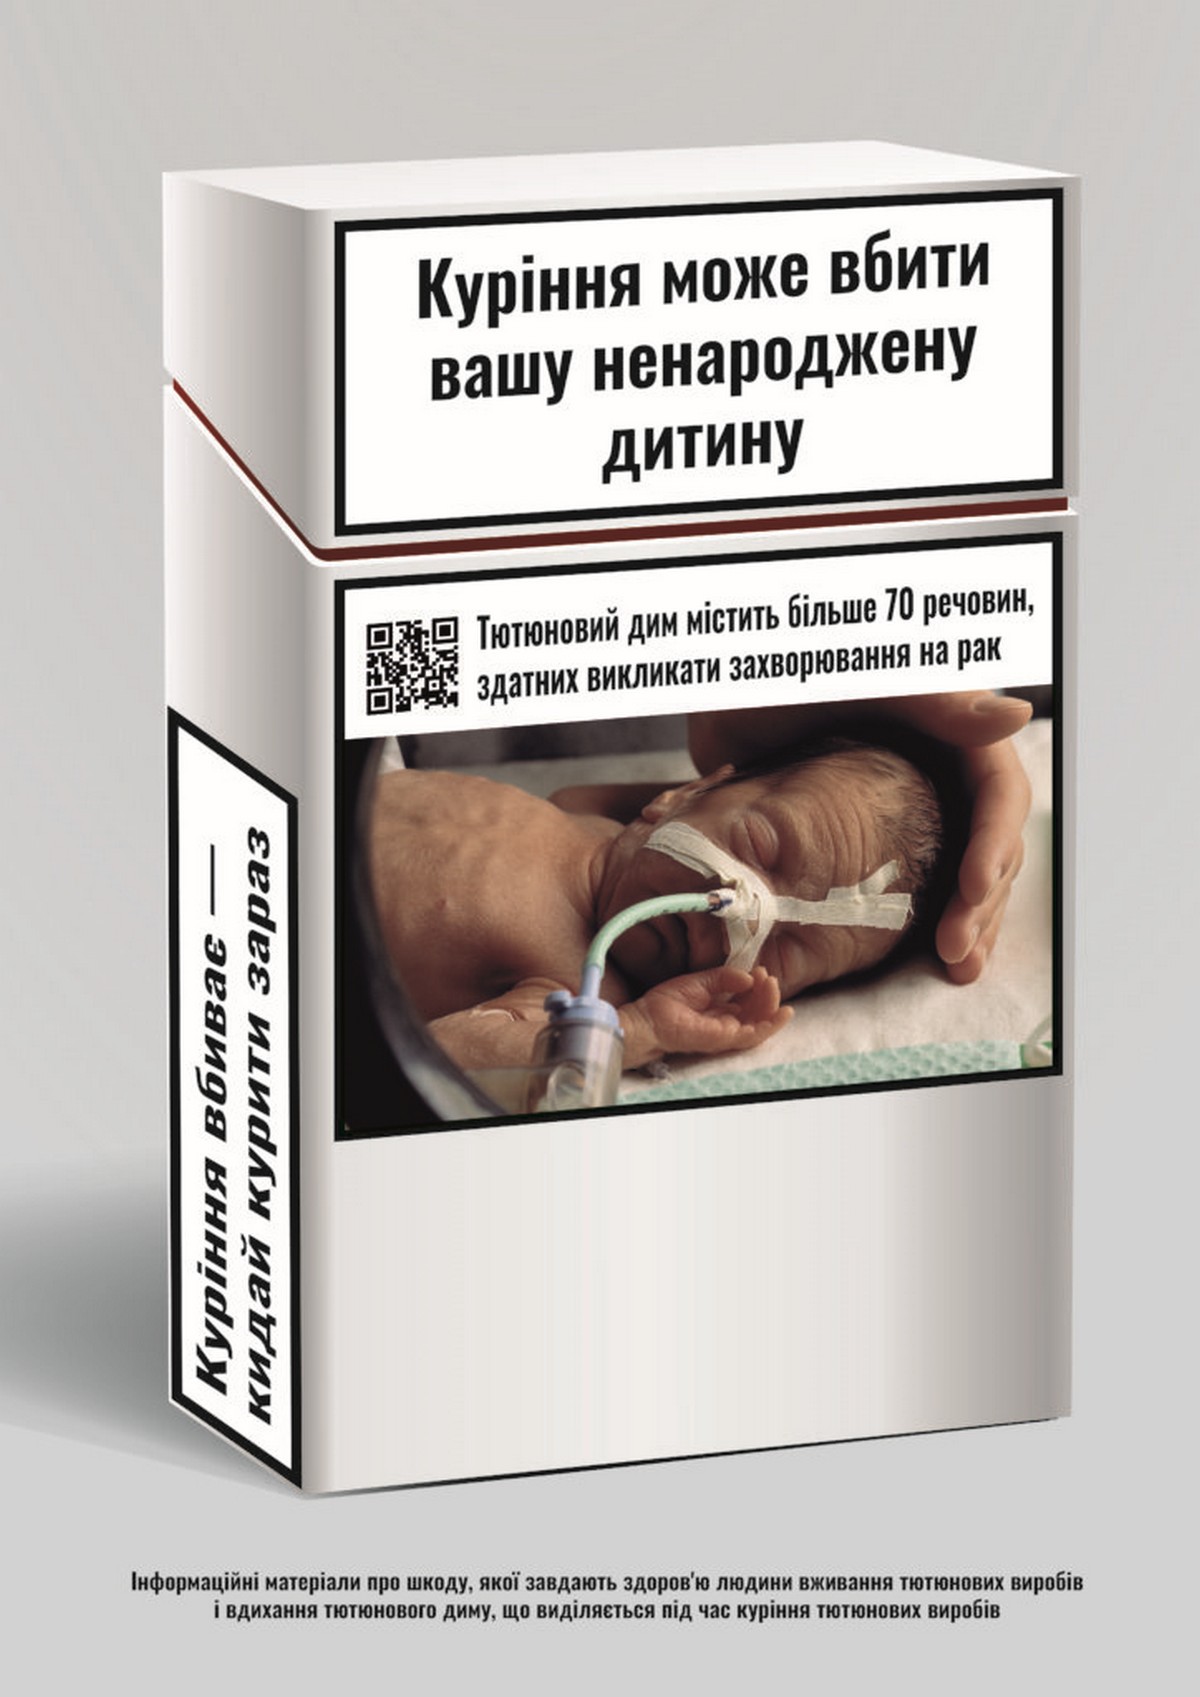 З 11 липня в Україні заборонено продаж сигарет з ароматизаторами – закон остаточно набув чинності